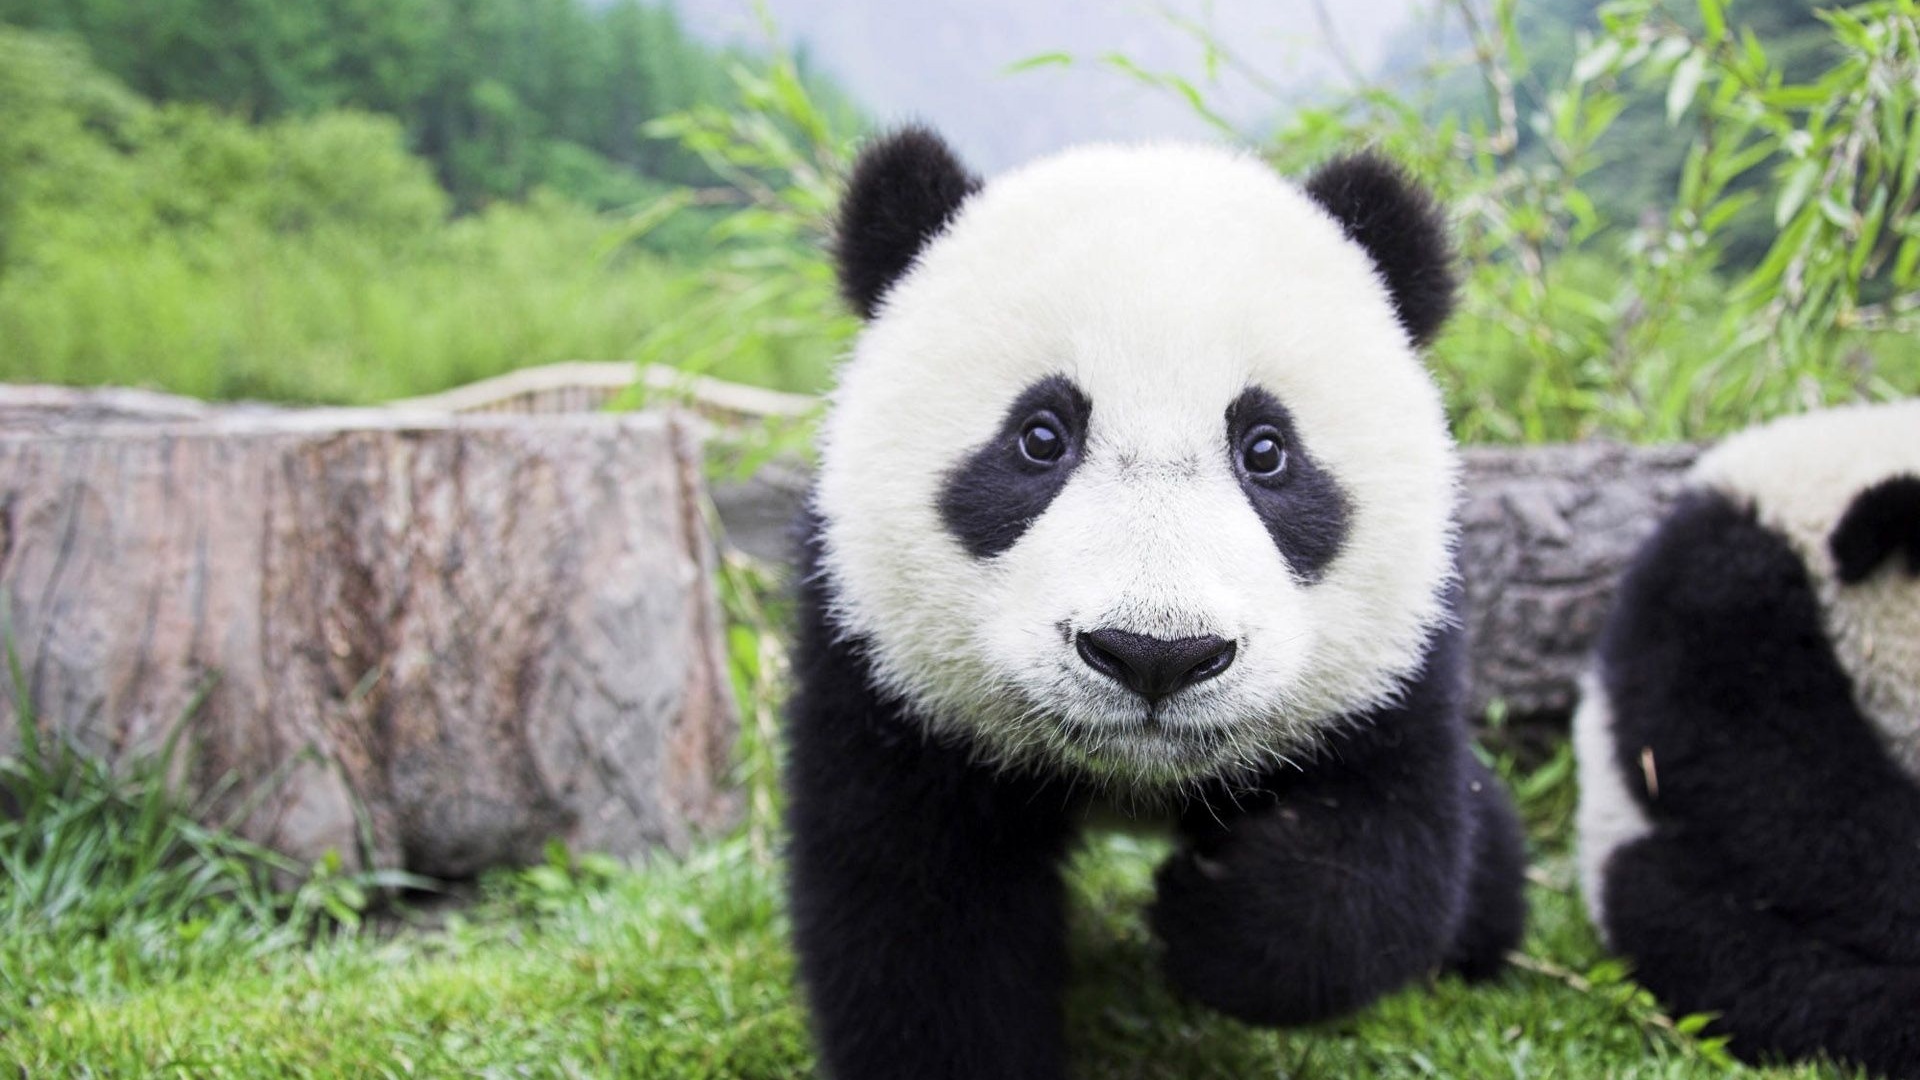 Beautiful Baby Panda